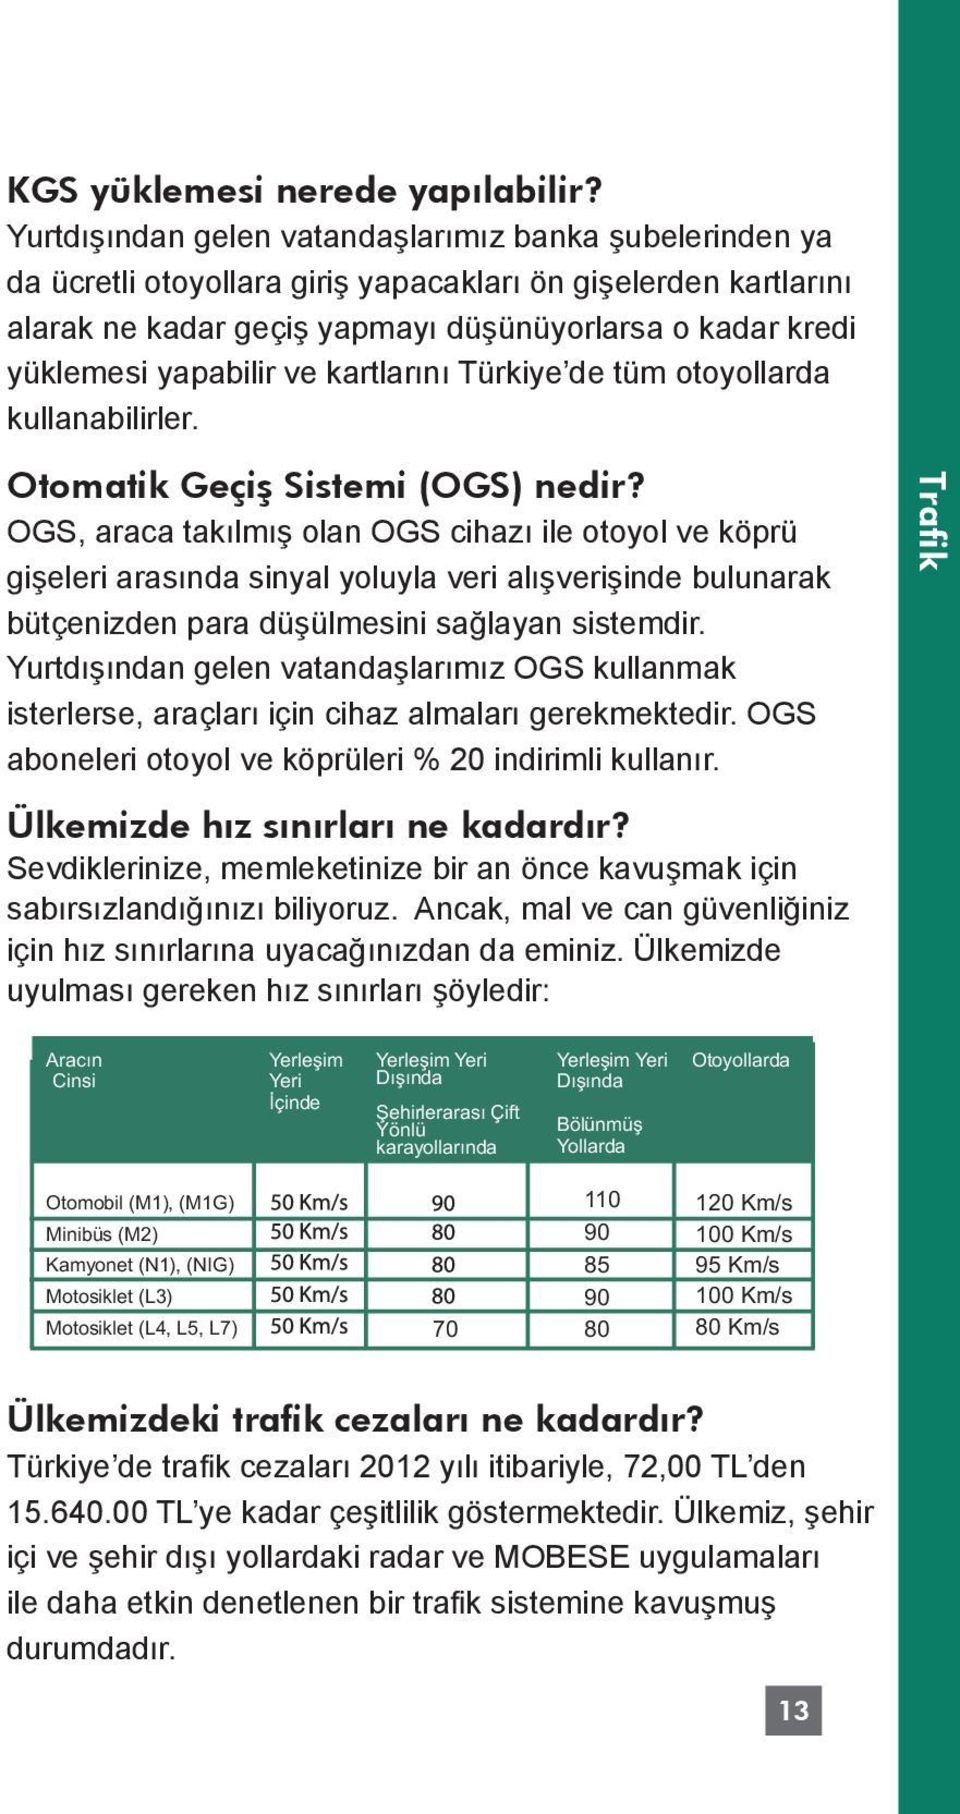 yapabilir ve kartlarını Türkiye de tüm otoyollarda kullanabilirler. Otomatik Geçiş Sistemi (OGS) nedir?